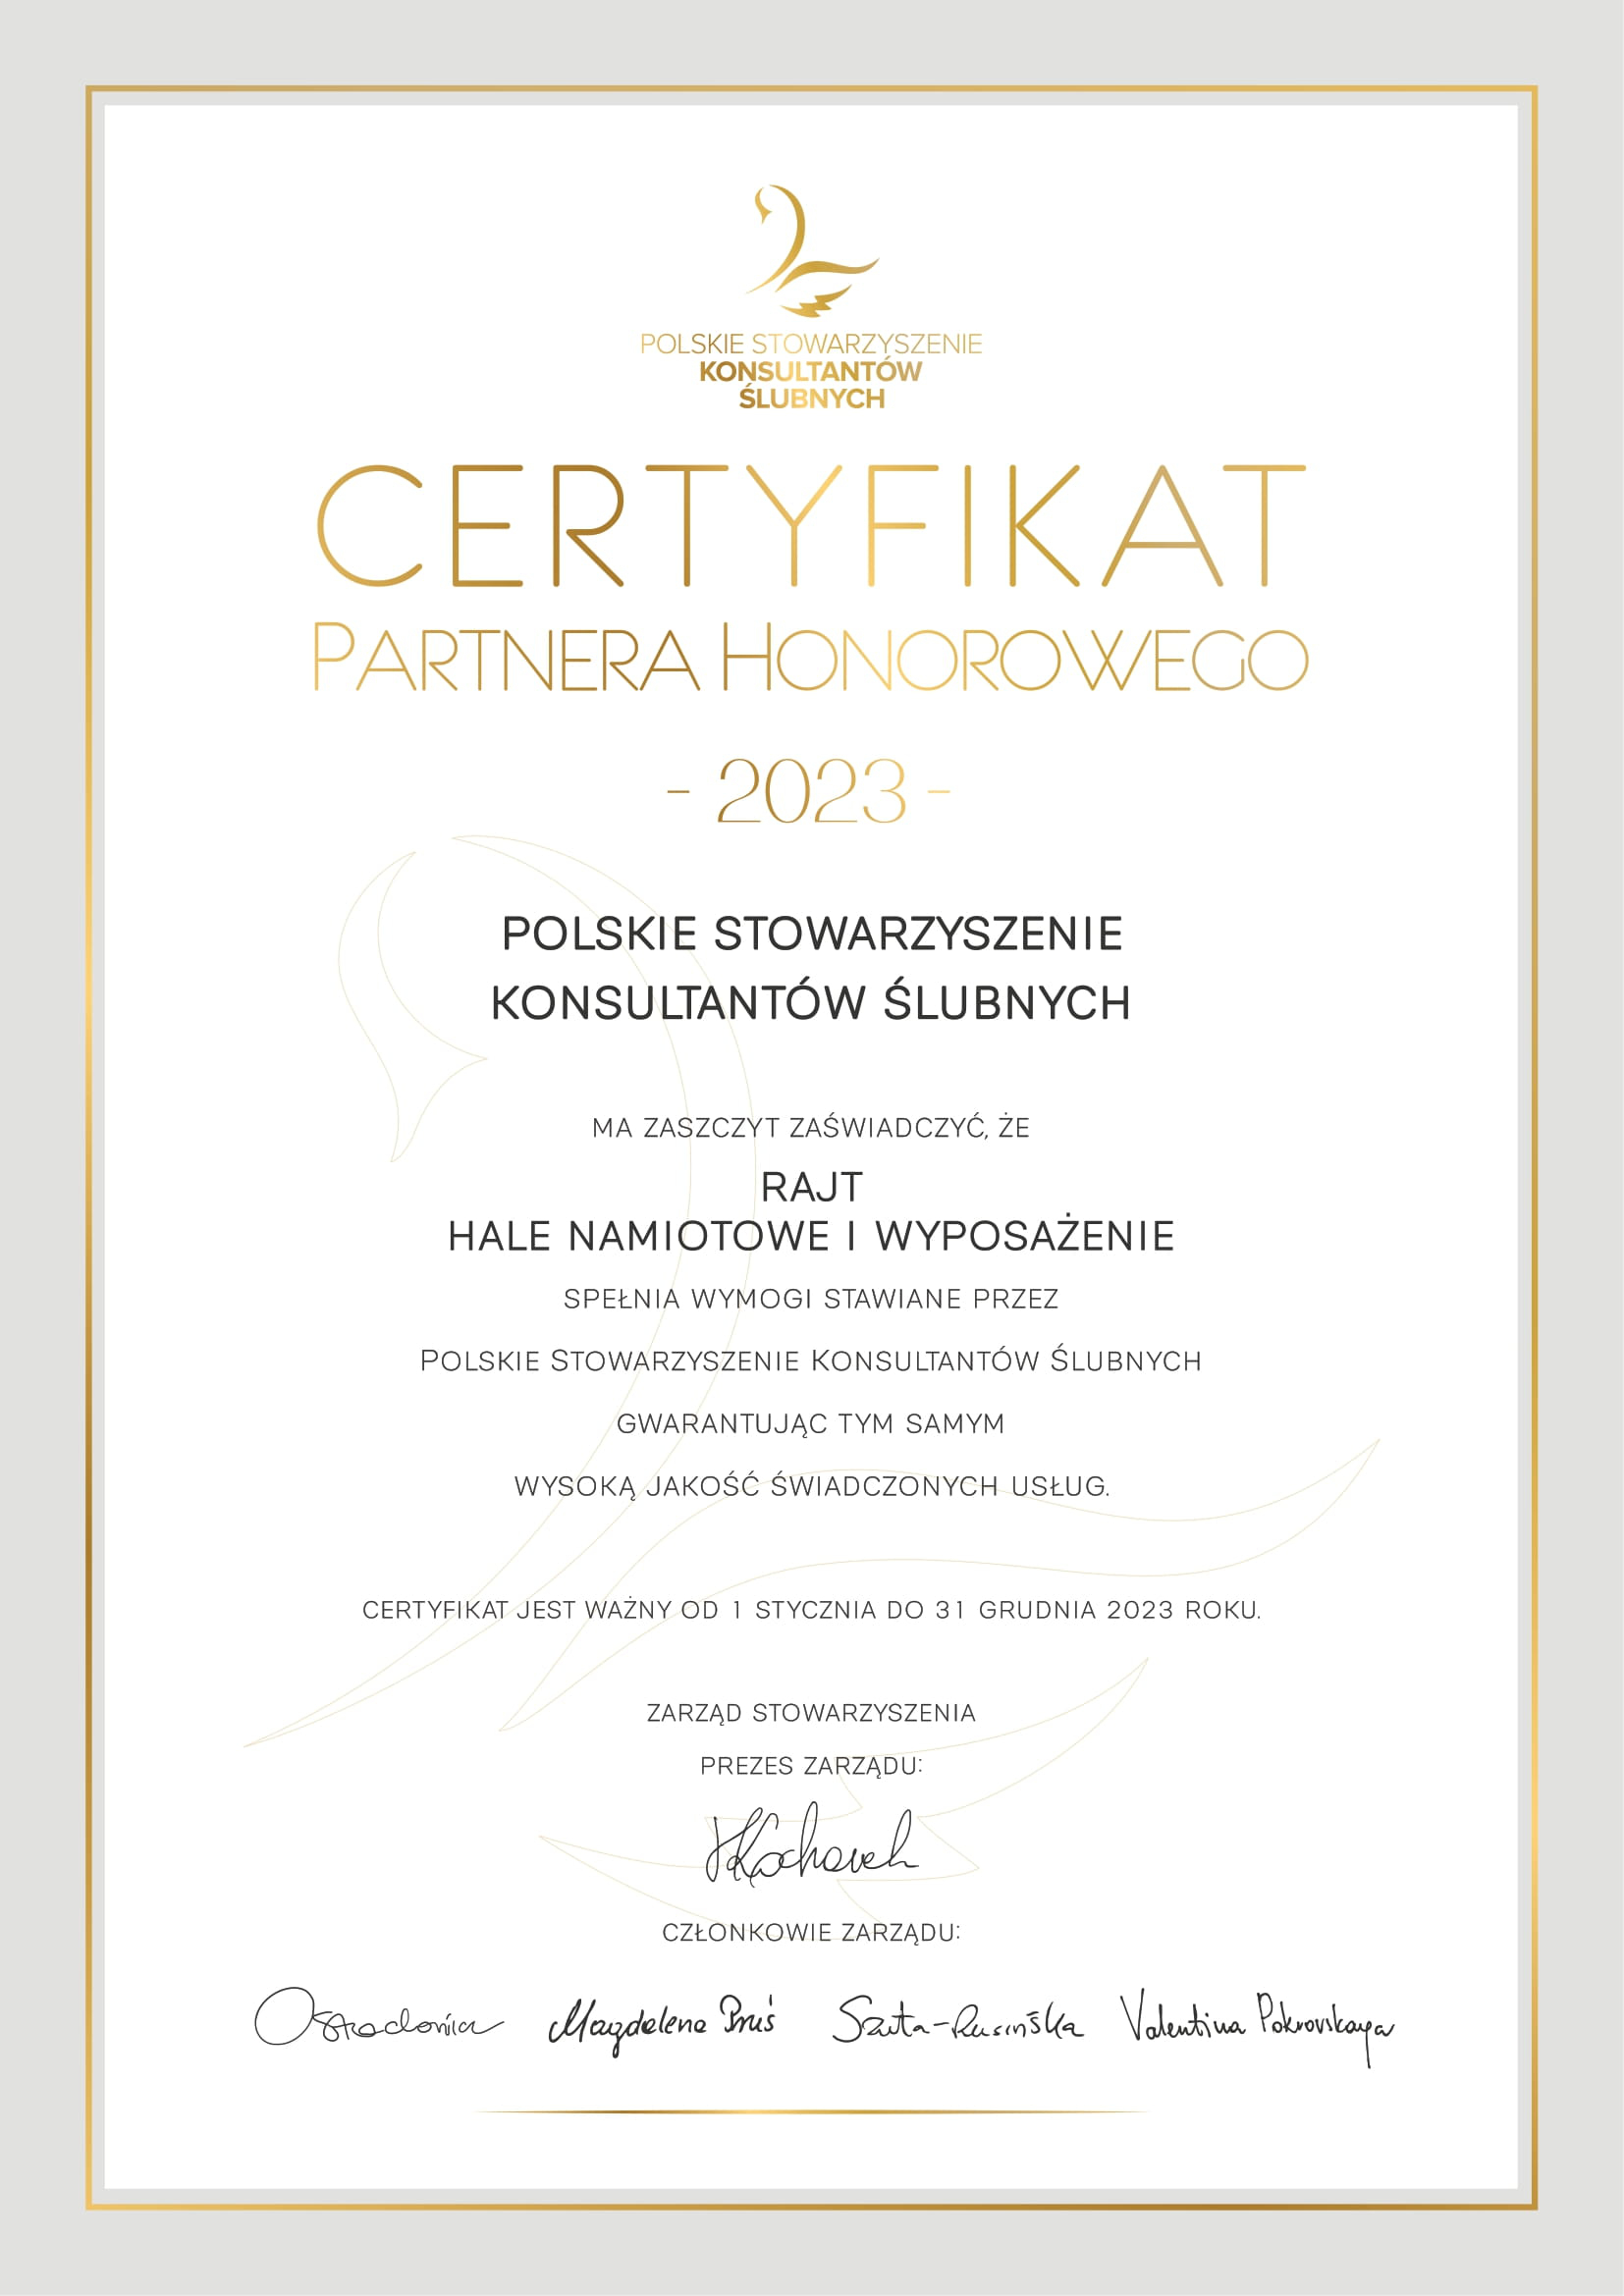 POLSKIE STOWARZYSZENIE KONSULTANTÓW ŚLUBNYCH - Certyfikat partnera honorowego 2022 